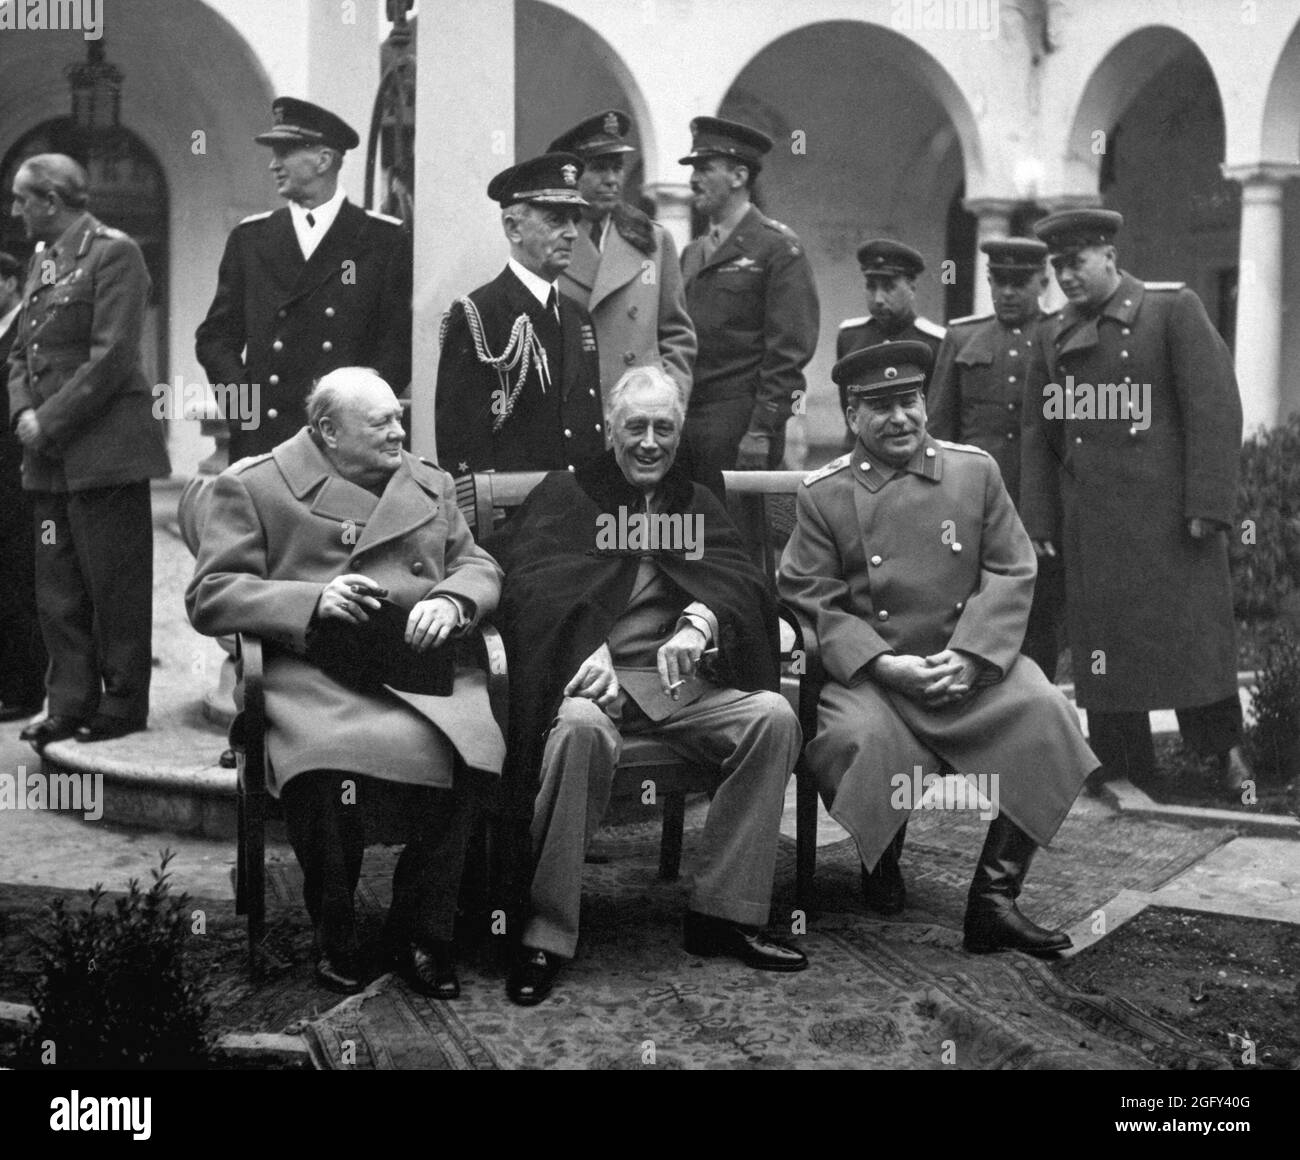 Konferenz der Großen drei in Jalta, auch bekannt als Krim-Konferenz (Codename Argonaut). Premierminister Winston S. Churchill, Präsident Franklin D. Roosevelt und Premier Josef Stalin sitzen auf der Terrasse zusammen. Februar 1945. Stockfoto